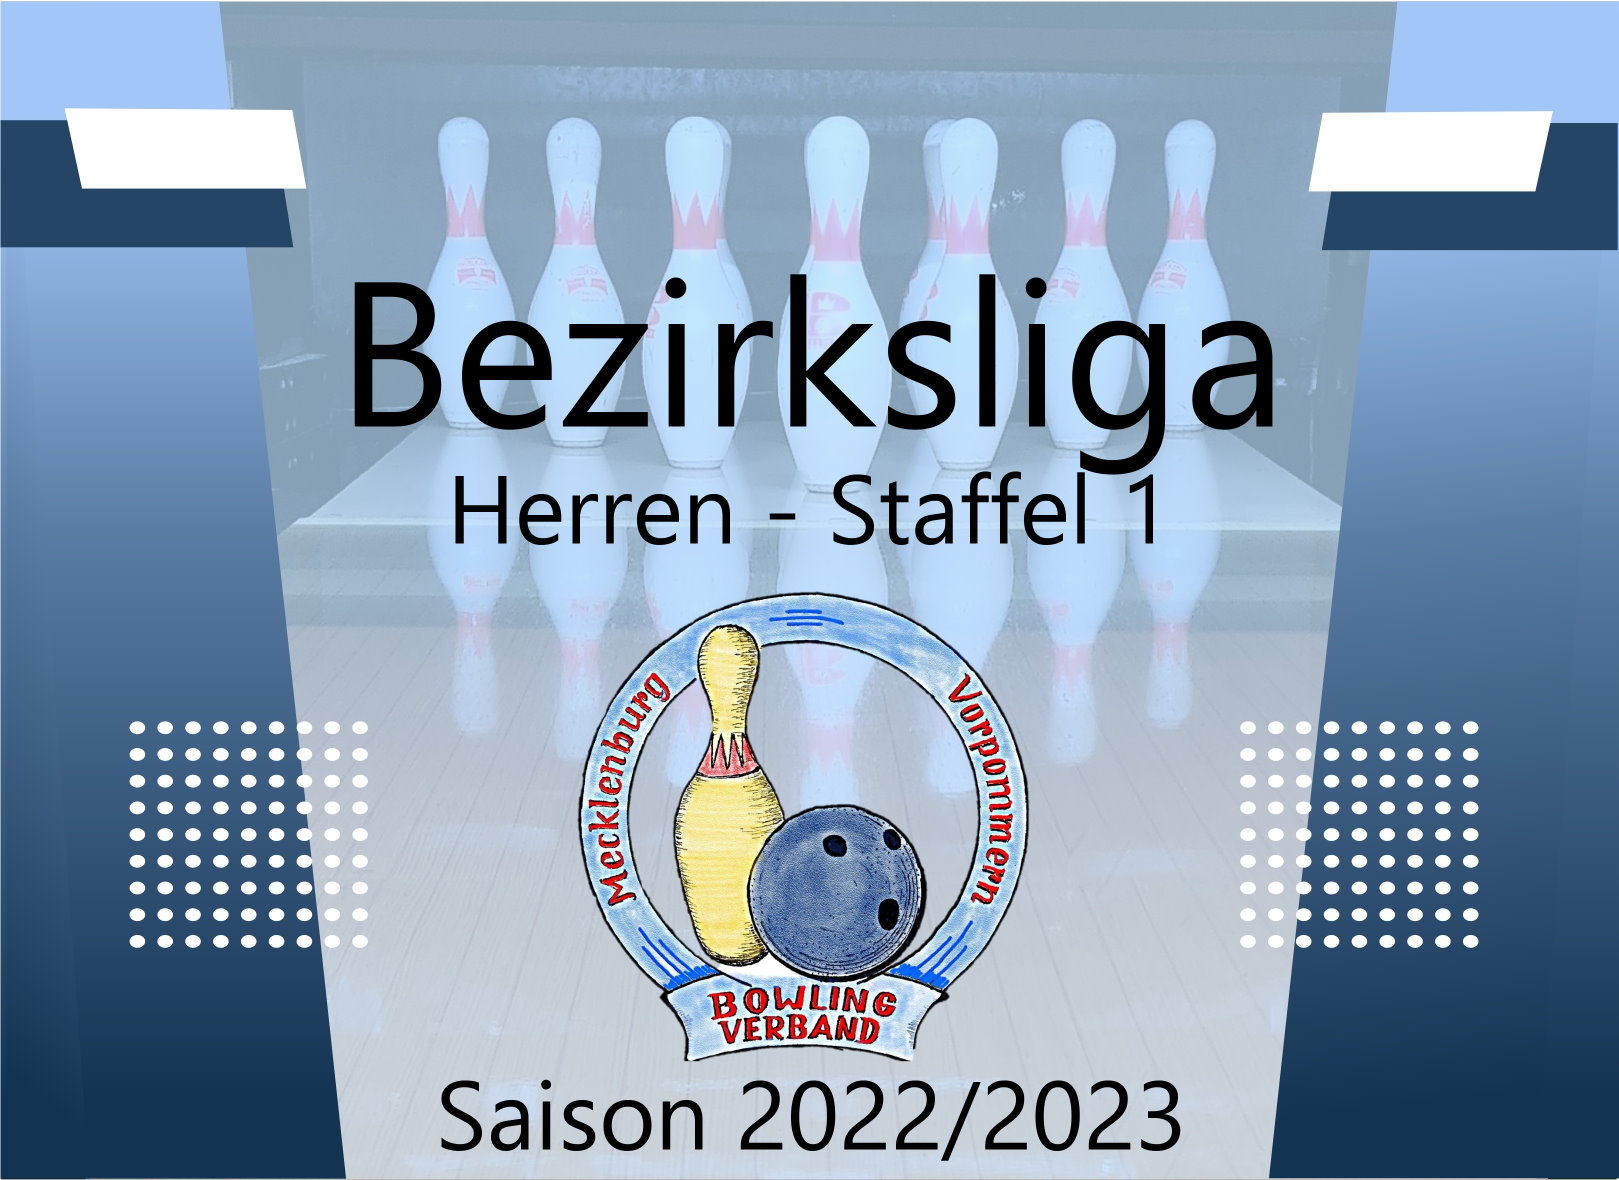 Bezirksliga Herren Staffel 1 - 4. Spieltag